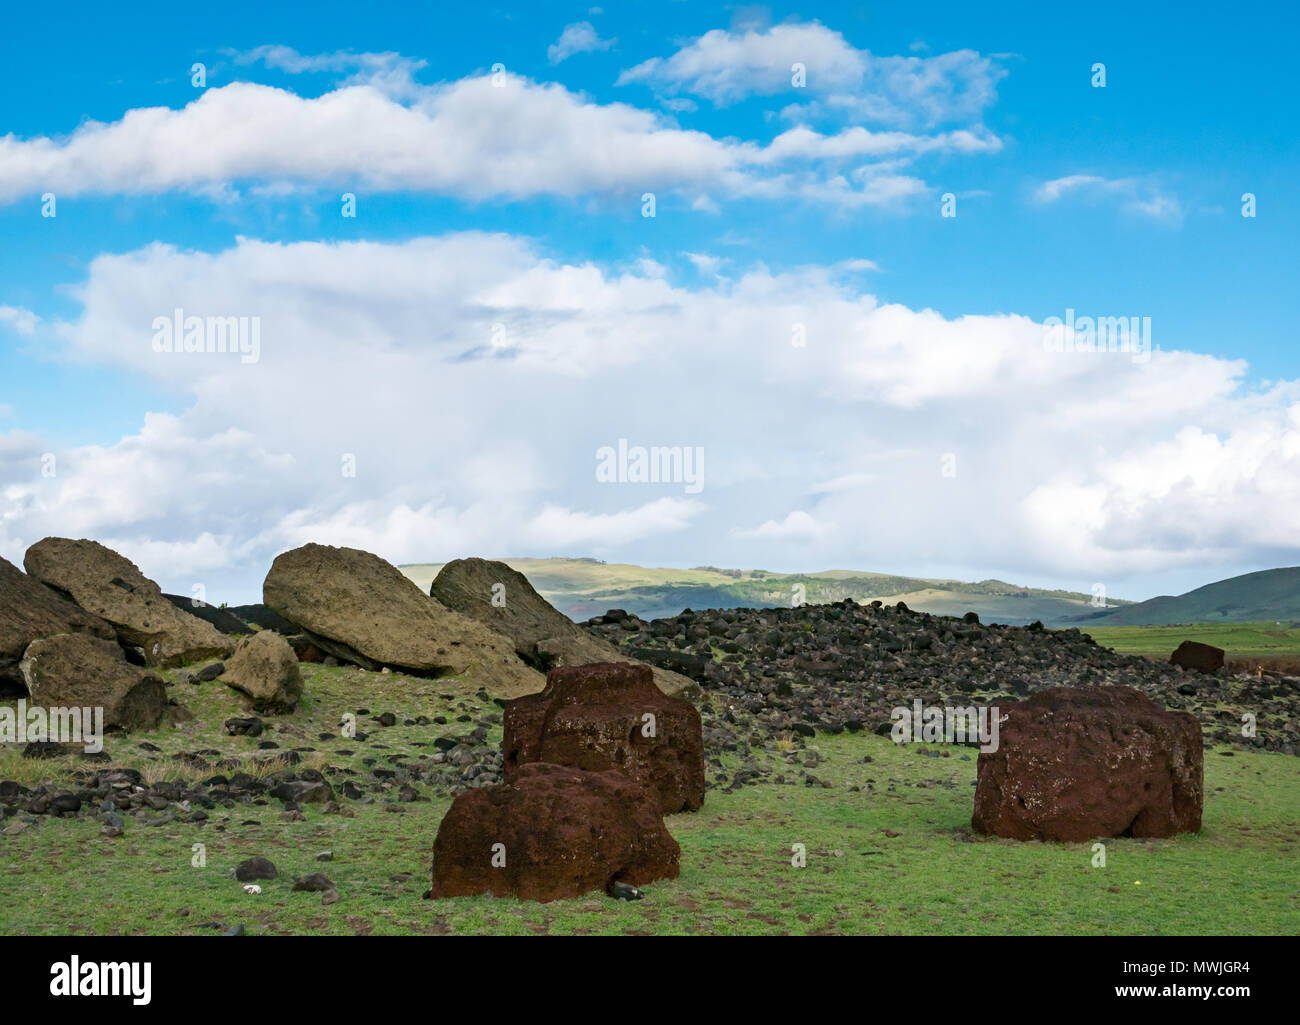 Crollato ancestrale di pietra vulcanica Moai figure vicino al litorale, Akahanga, Isola di Pasqua, Rapa Nui, Cile, con scouria rossa roccia vulcanica topknots Foto Stock